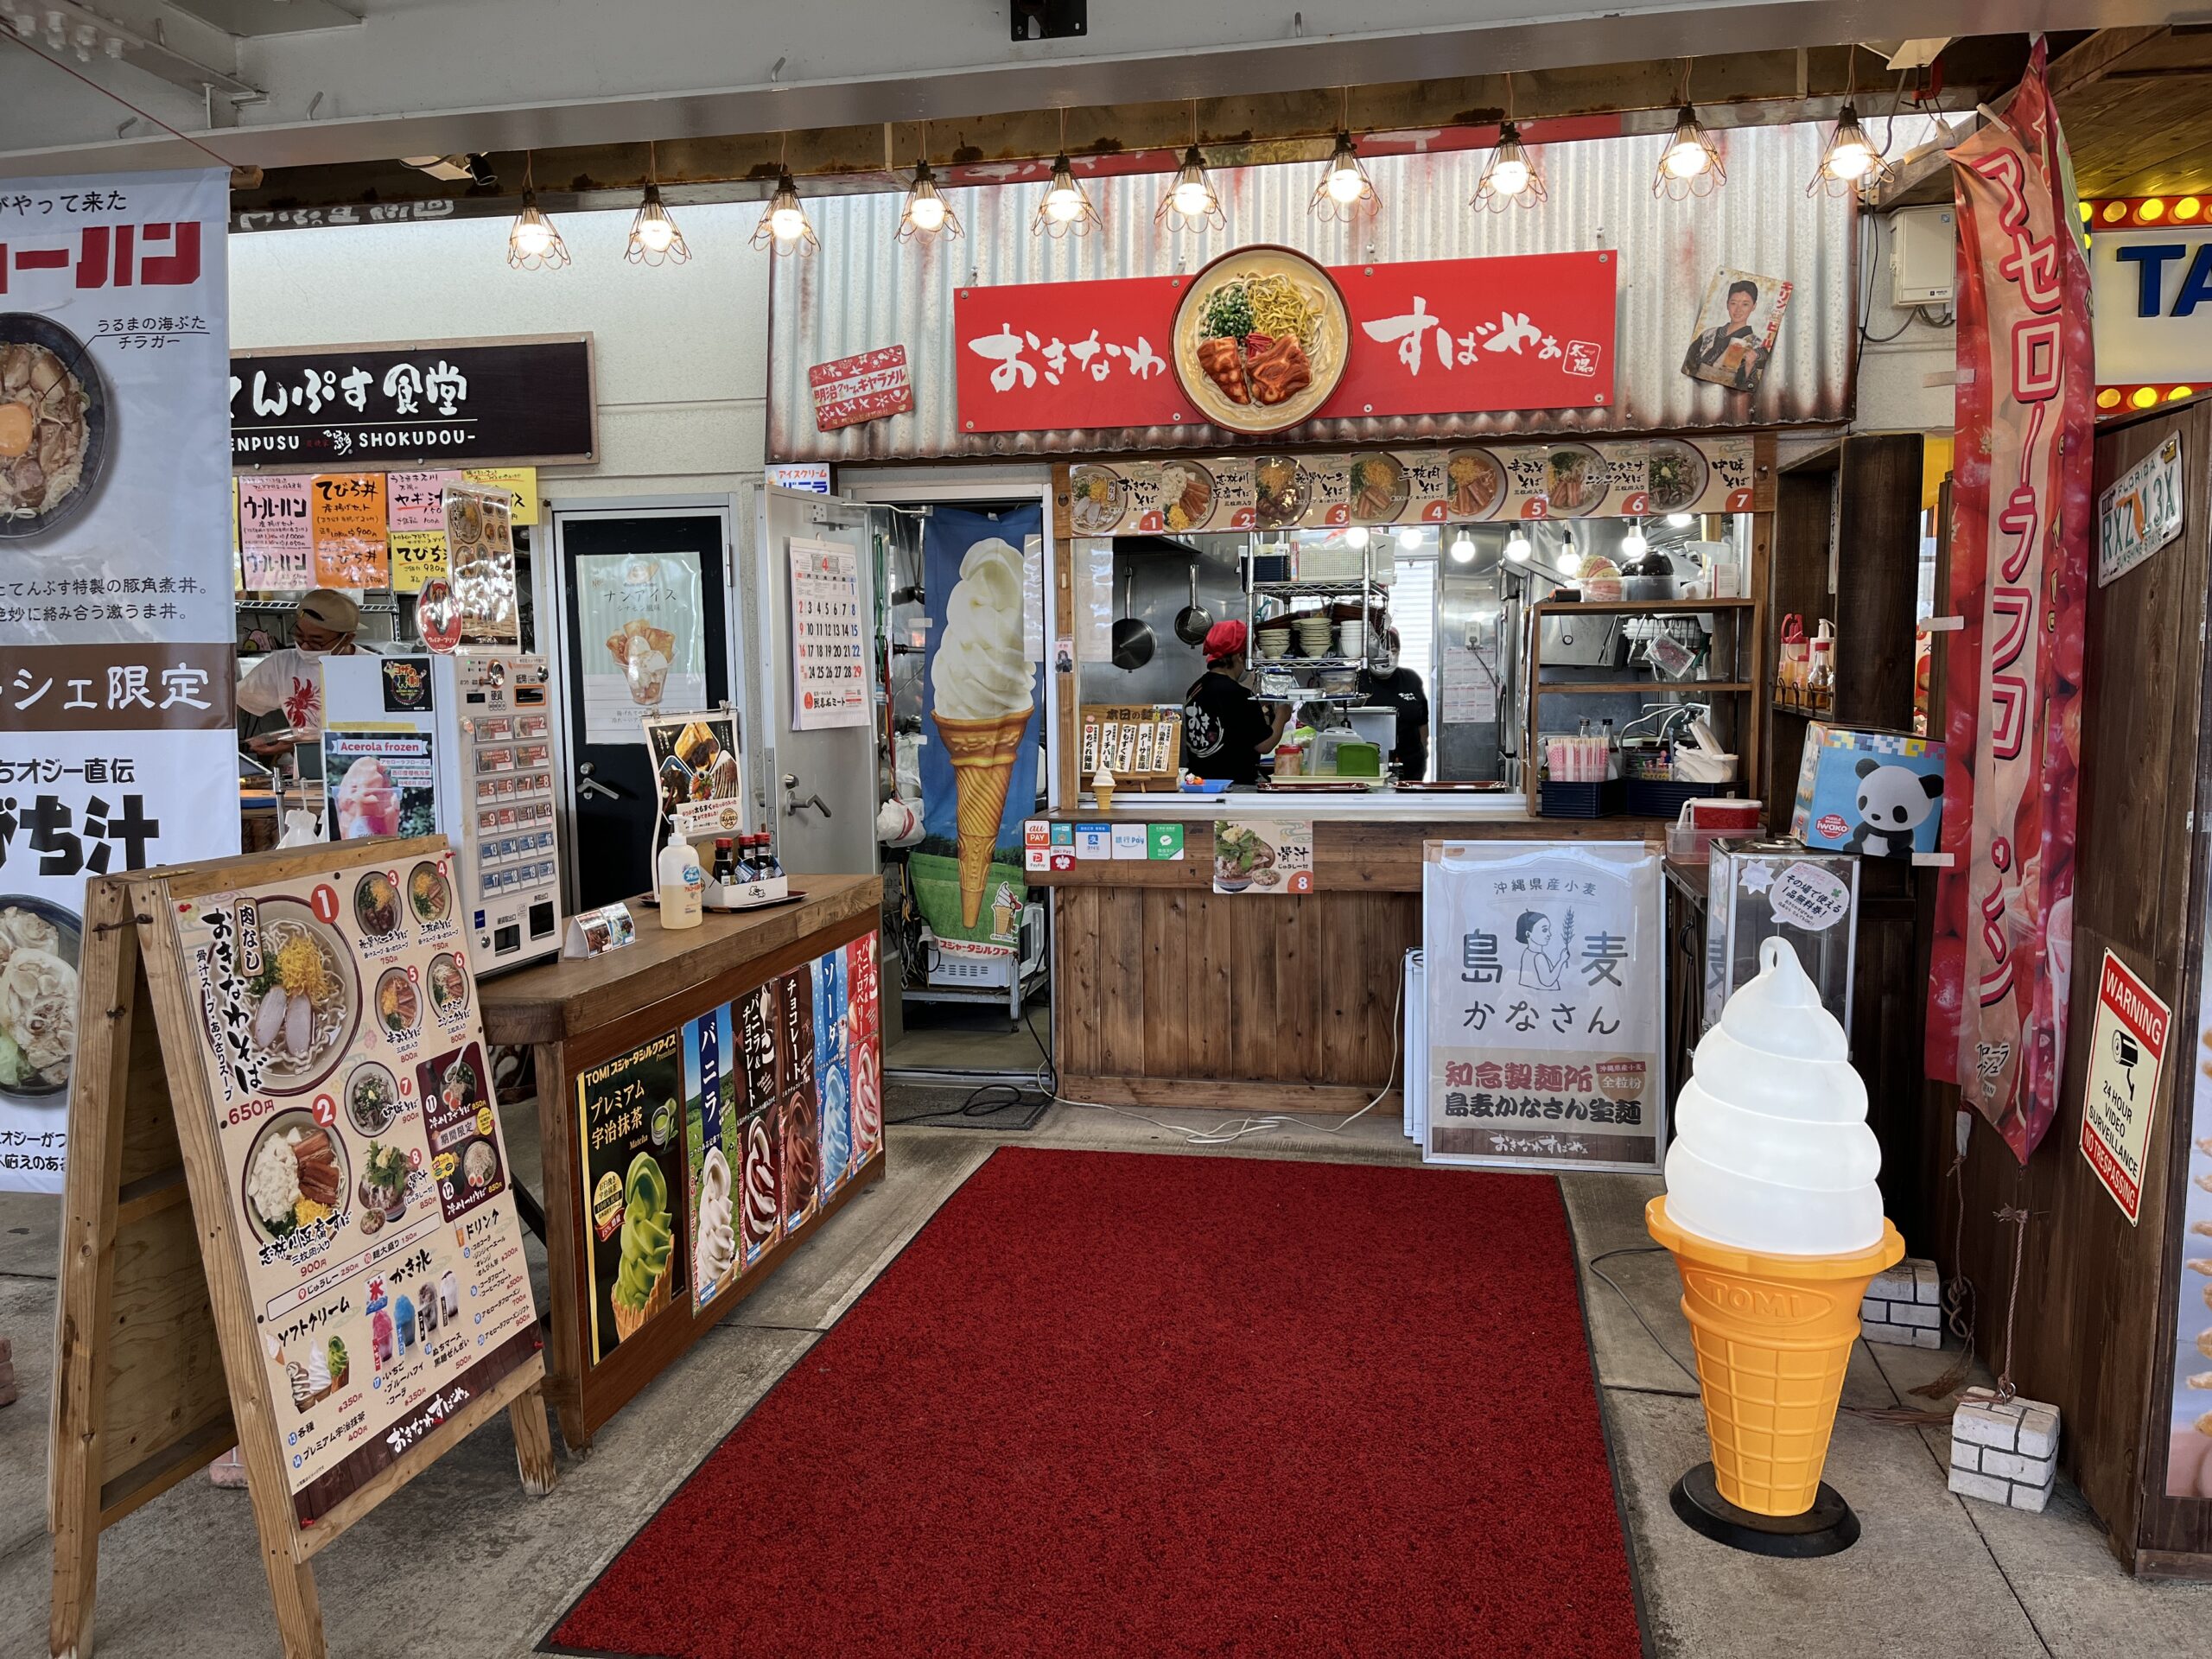 那覇市泉崎『神里(かんざと)そば』昔の純喫茶のような落ち着いた雰囲気のお店